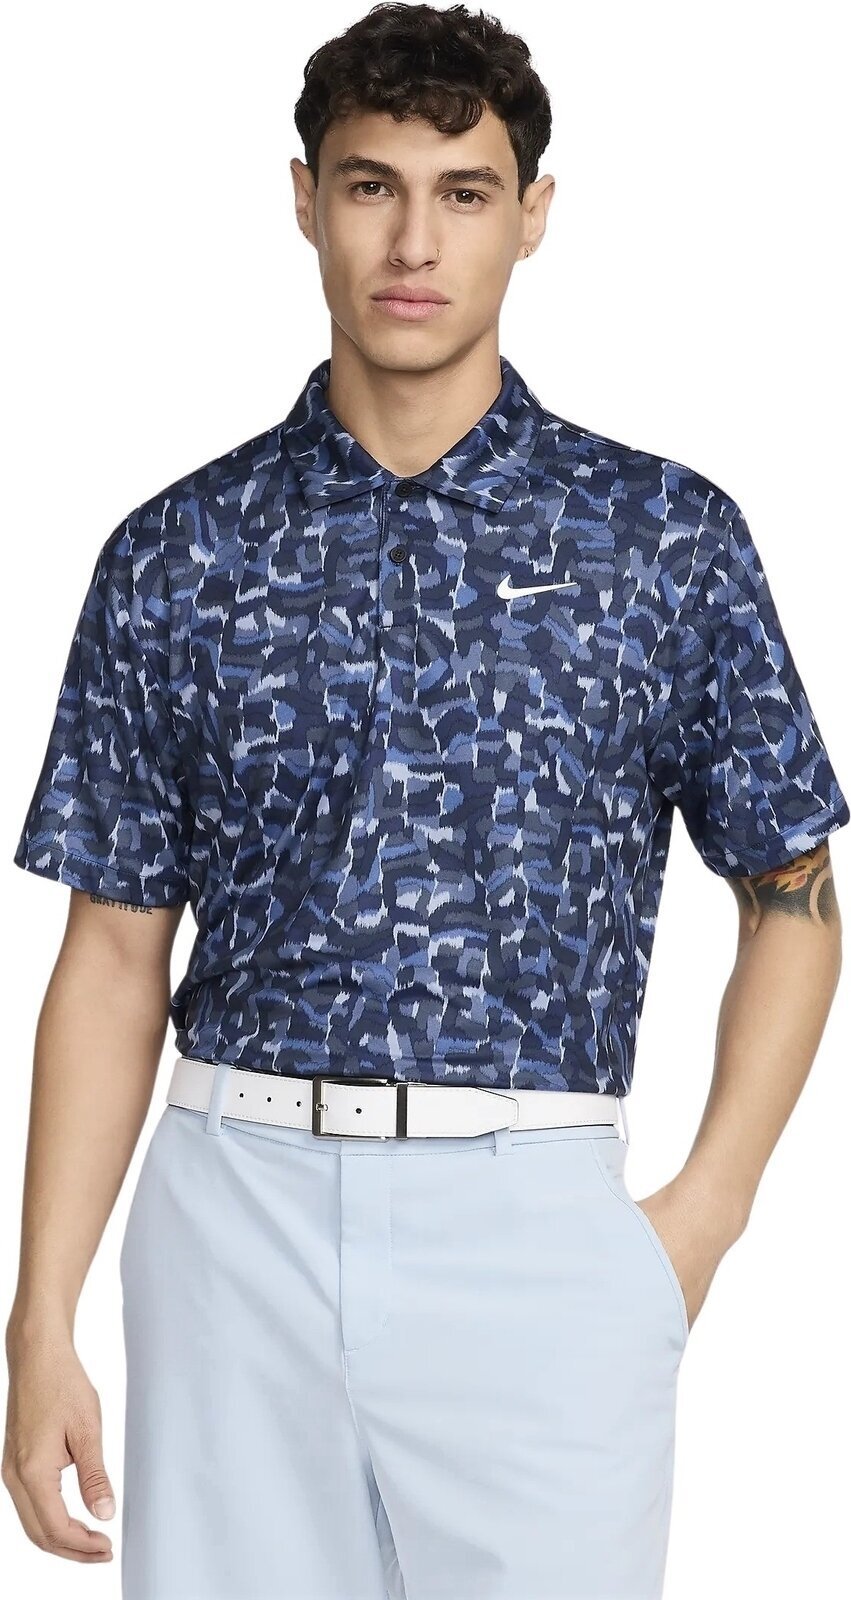 Camiseta polo Nike Dri-Fit Tour Confetti Print Mens Polo Ashen Slate/White 2XL Camiseta polo